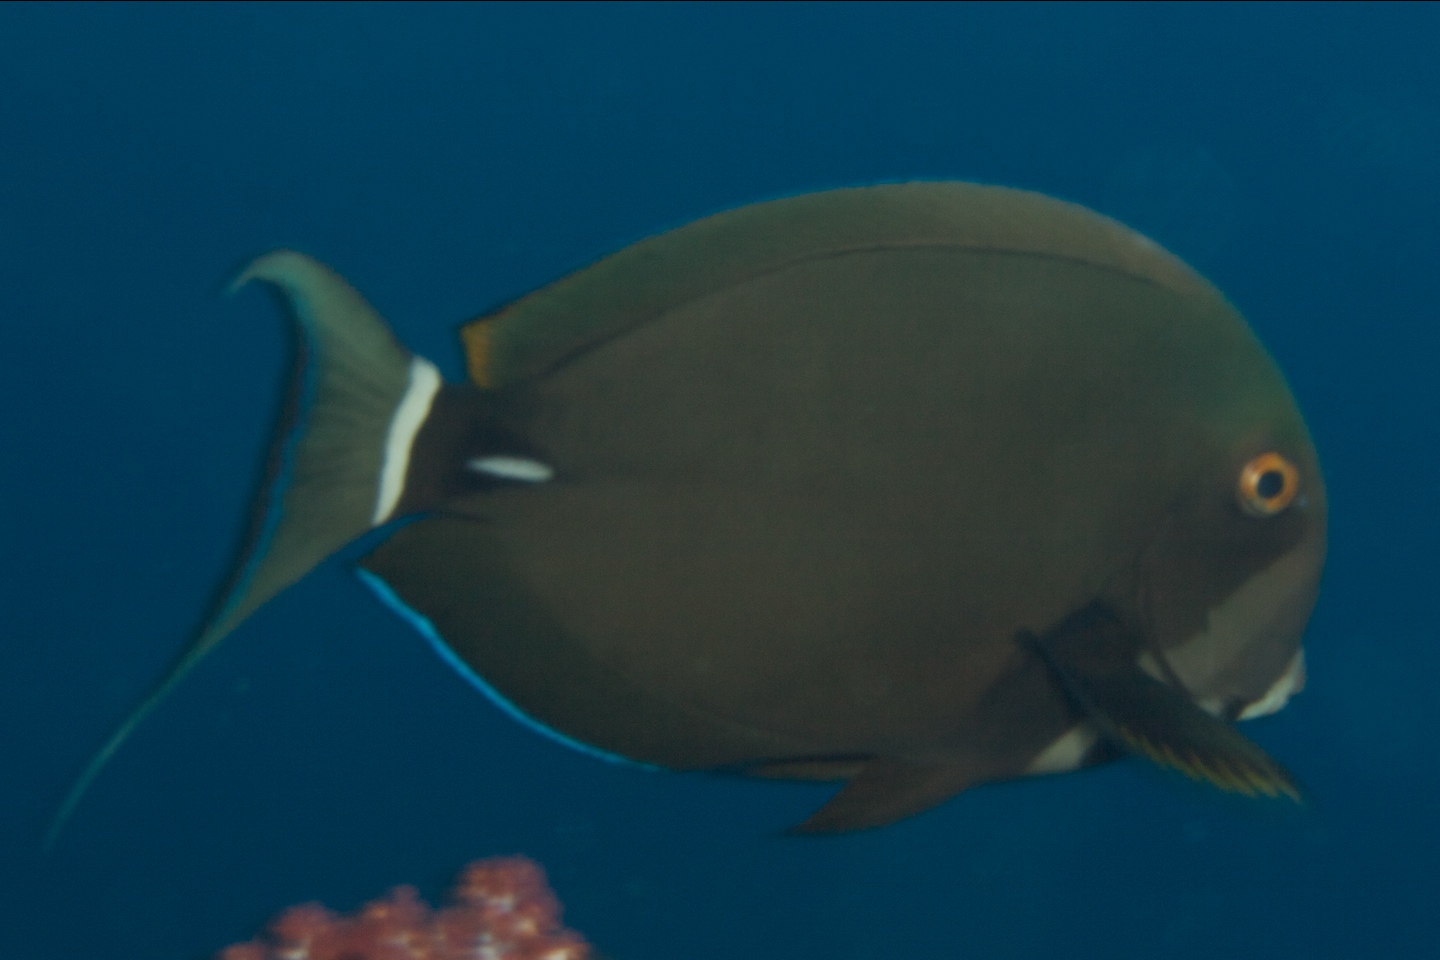 Pale-lipped surgeonfish